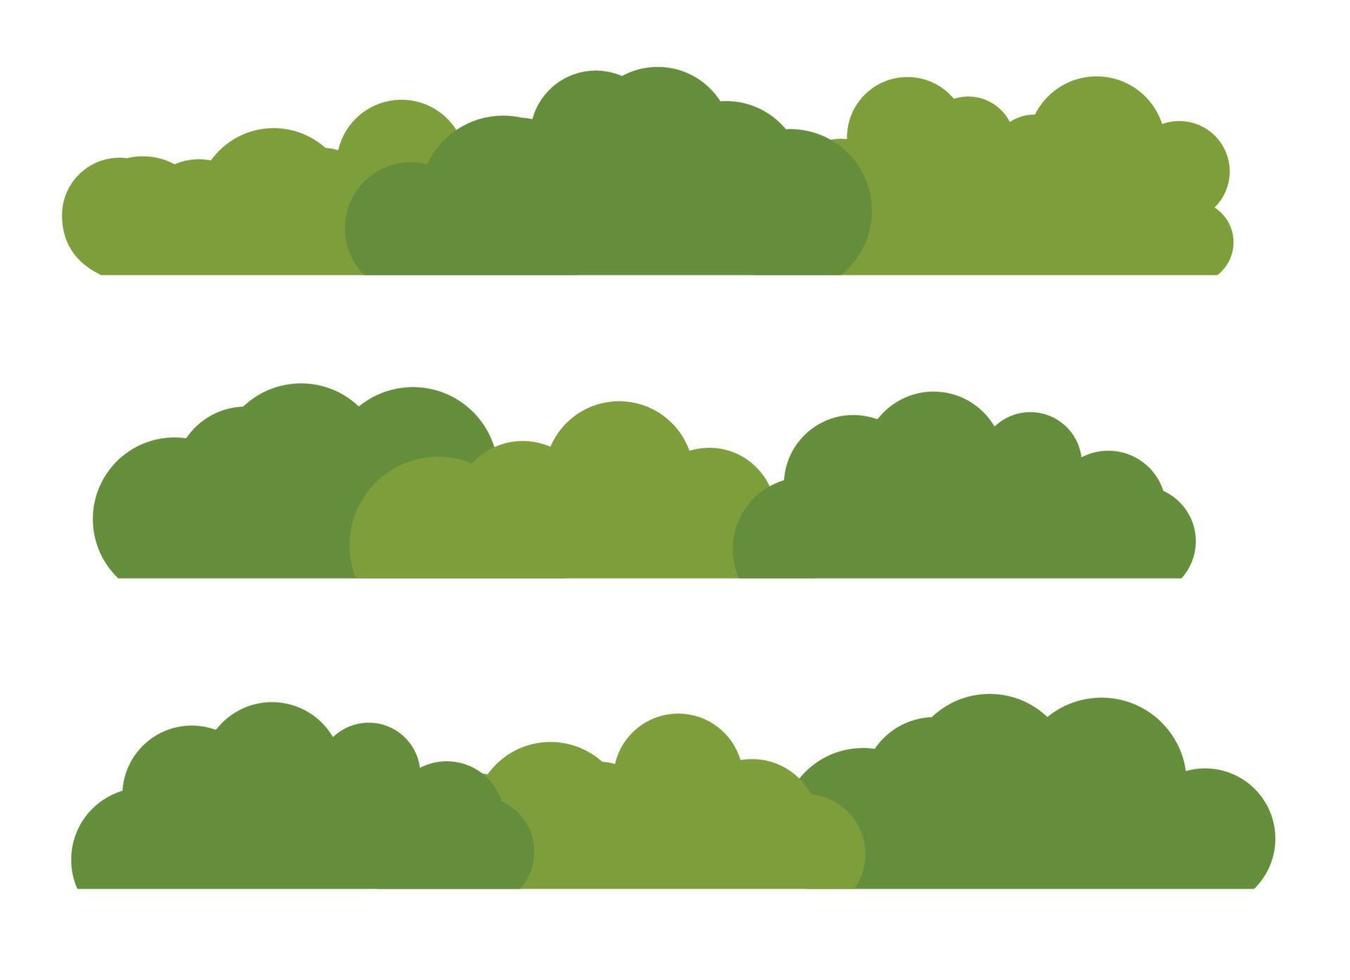 groene struik landschap platte pictogram geïsoleerd op een witte achtergrond. vector illustratie